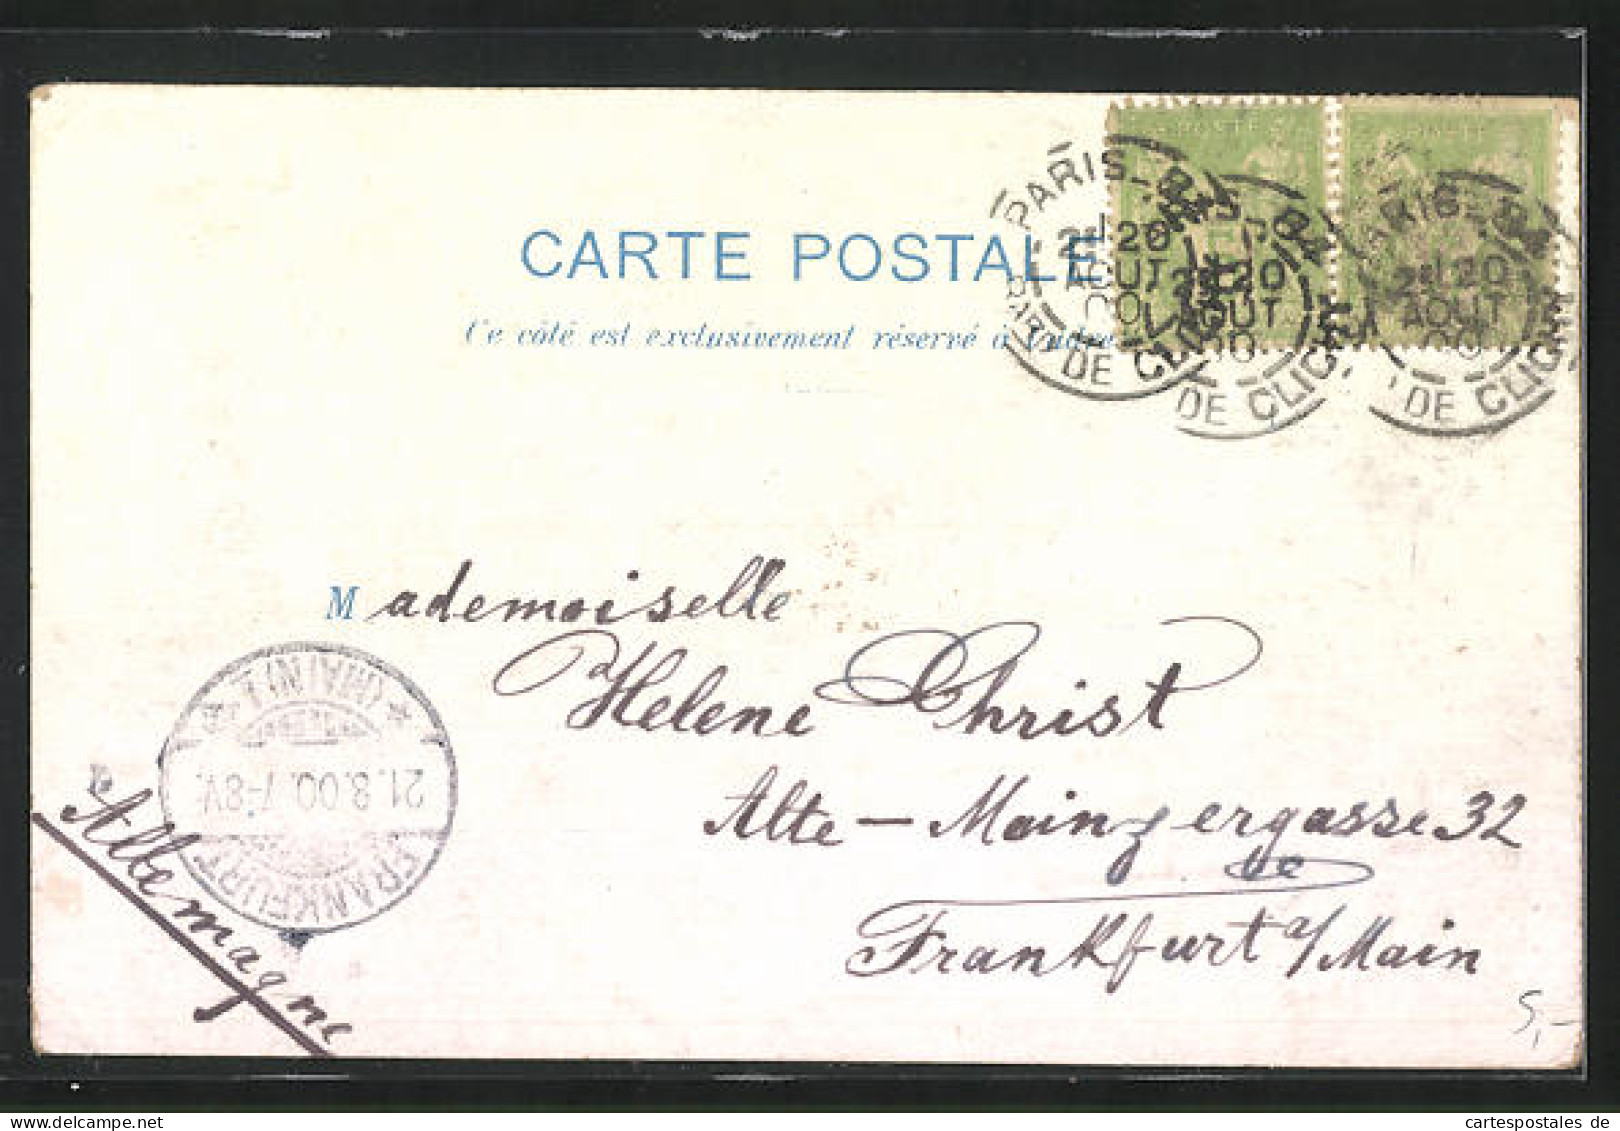 Lithographie Paris, Exposition Universelle De 1900, Le Pont Alexandre III.  - Ausstellungen